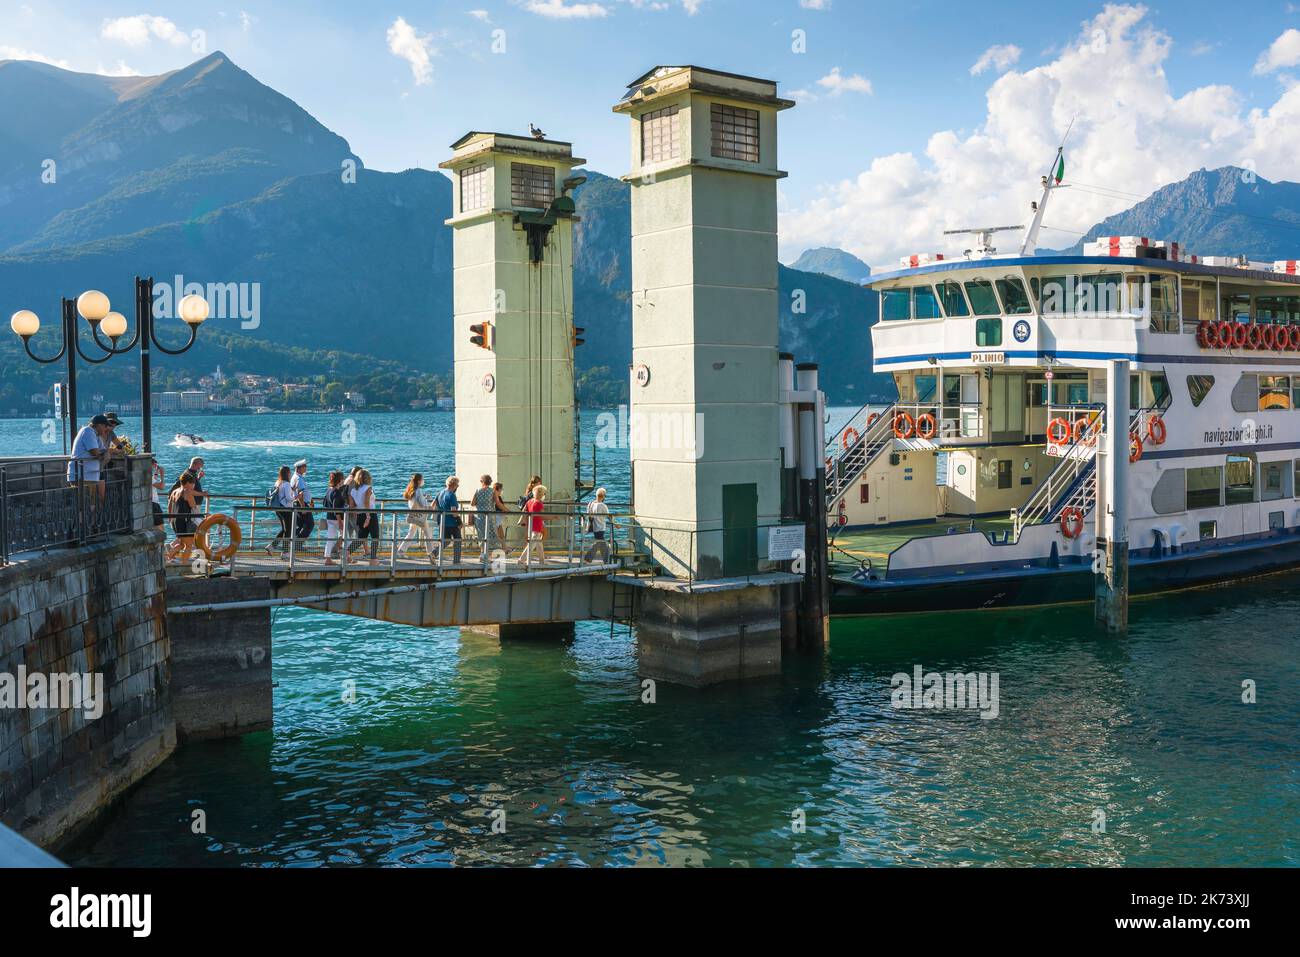 Traghetto passeggeri Lago di Como, vista in estate dei passeggeri a piedi a bordo di un traghetto ormeggiato al molo nella pittoresca cittadina di Bellagio, Italia Foto Stock